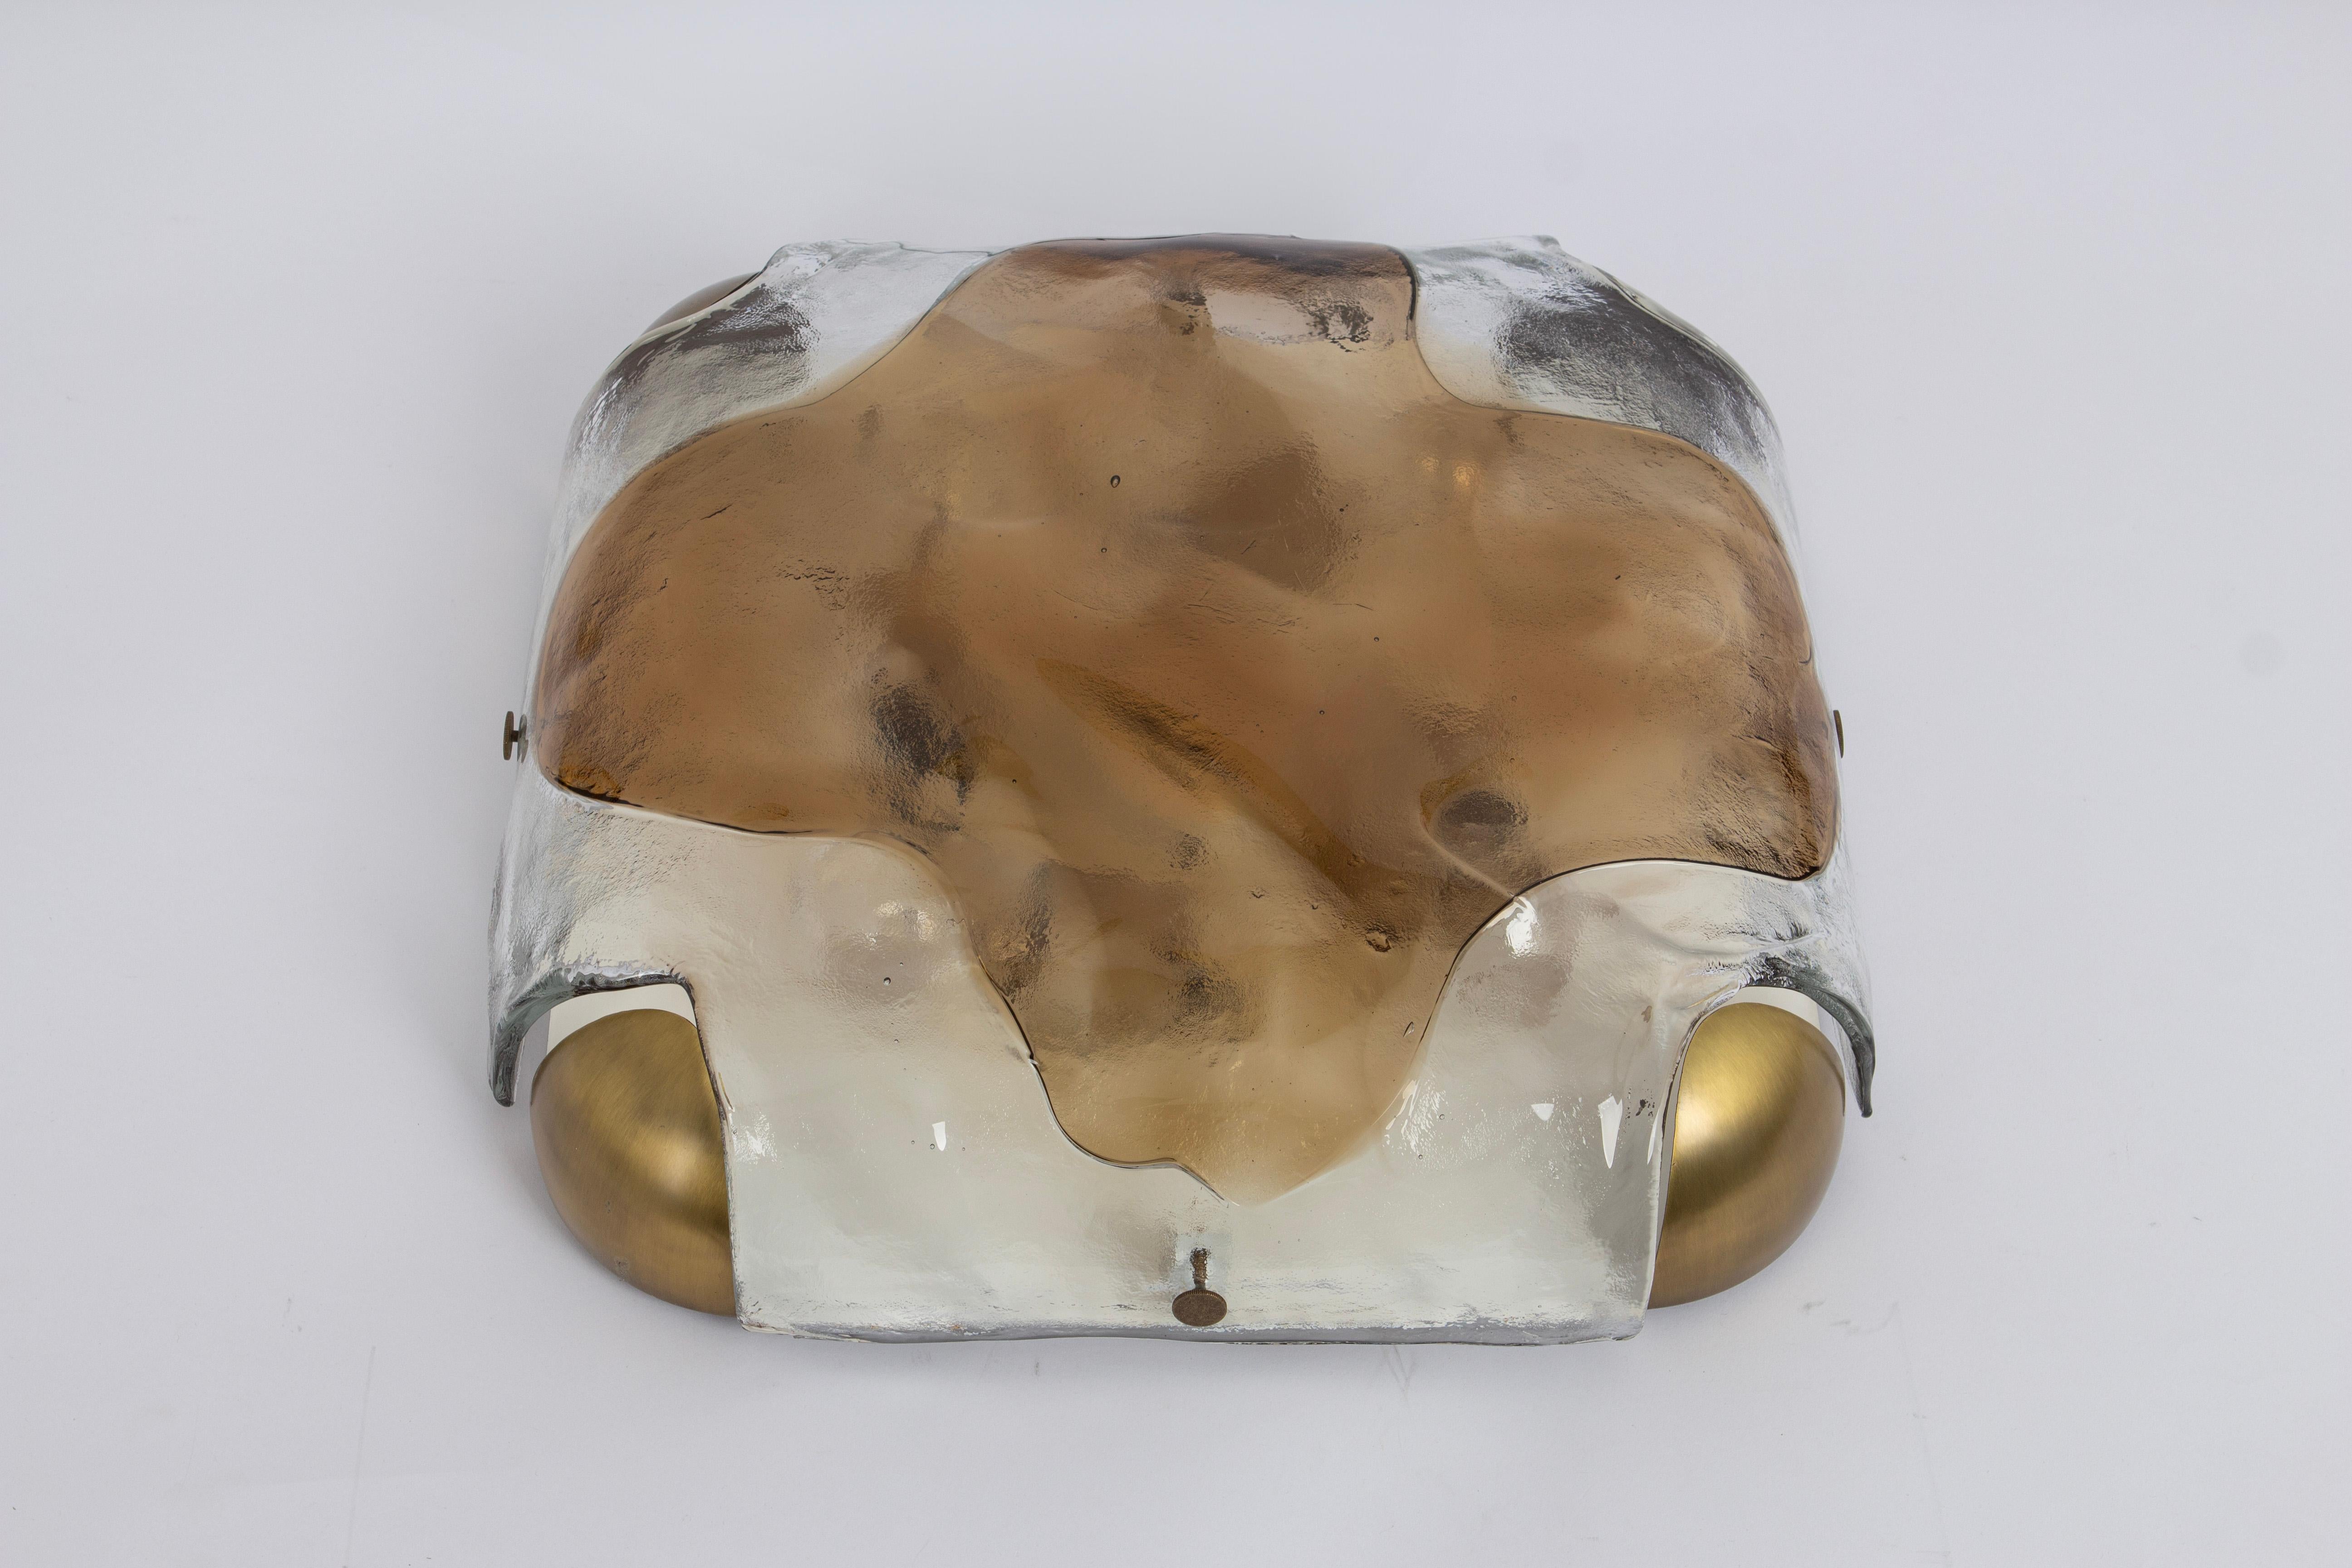 Magnifique monture encastrée en verre de Murano par Kaiser, Allemagne, années 1970.
Verre épais texturé fixé sur une base en métal et laiton.

De haute qualité et en très bon état. Nettoyé, bien câblé et prêt à l'emploi. 

Le luminaire nécessite 4